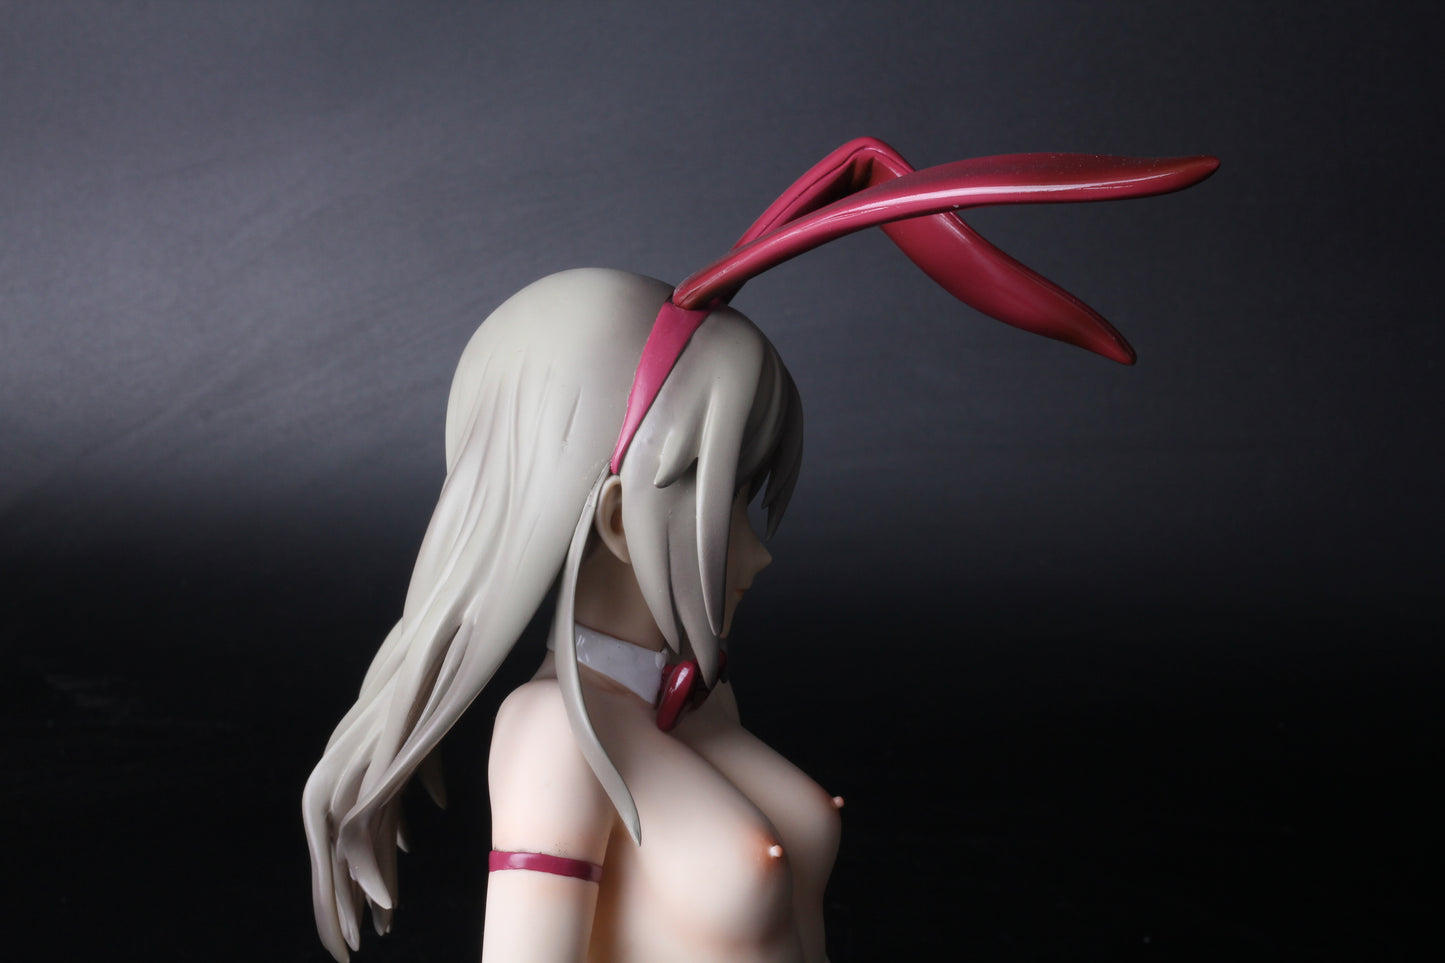 GOD EATER sexy Alisa Ilyinichna Omela 1/6 nude anime girl figure resin model figures